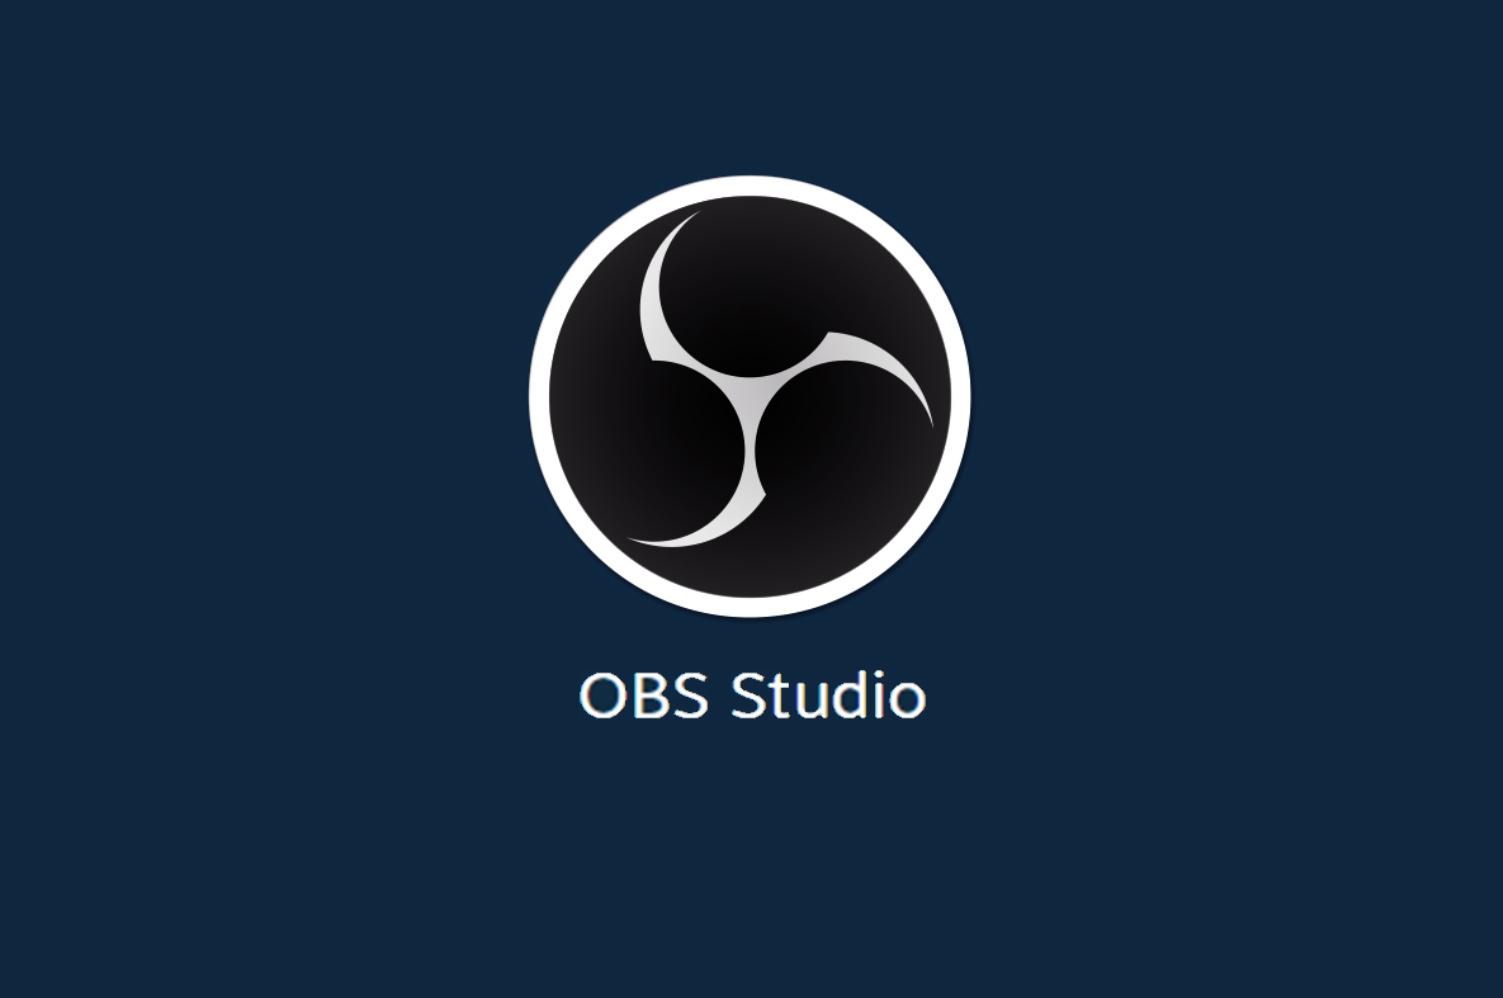 Obs com. OBS студио. Логотип обс. OBS Studio фото. Обс студио лого.